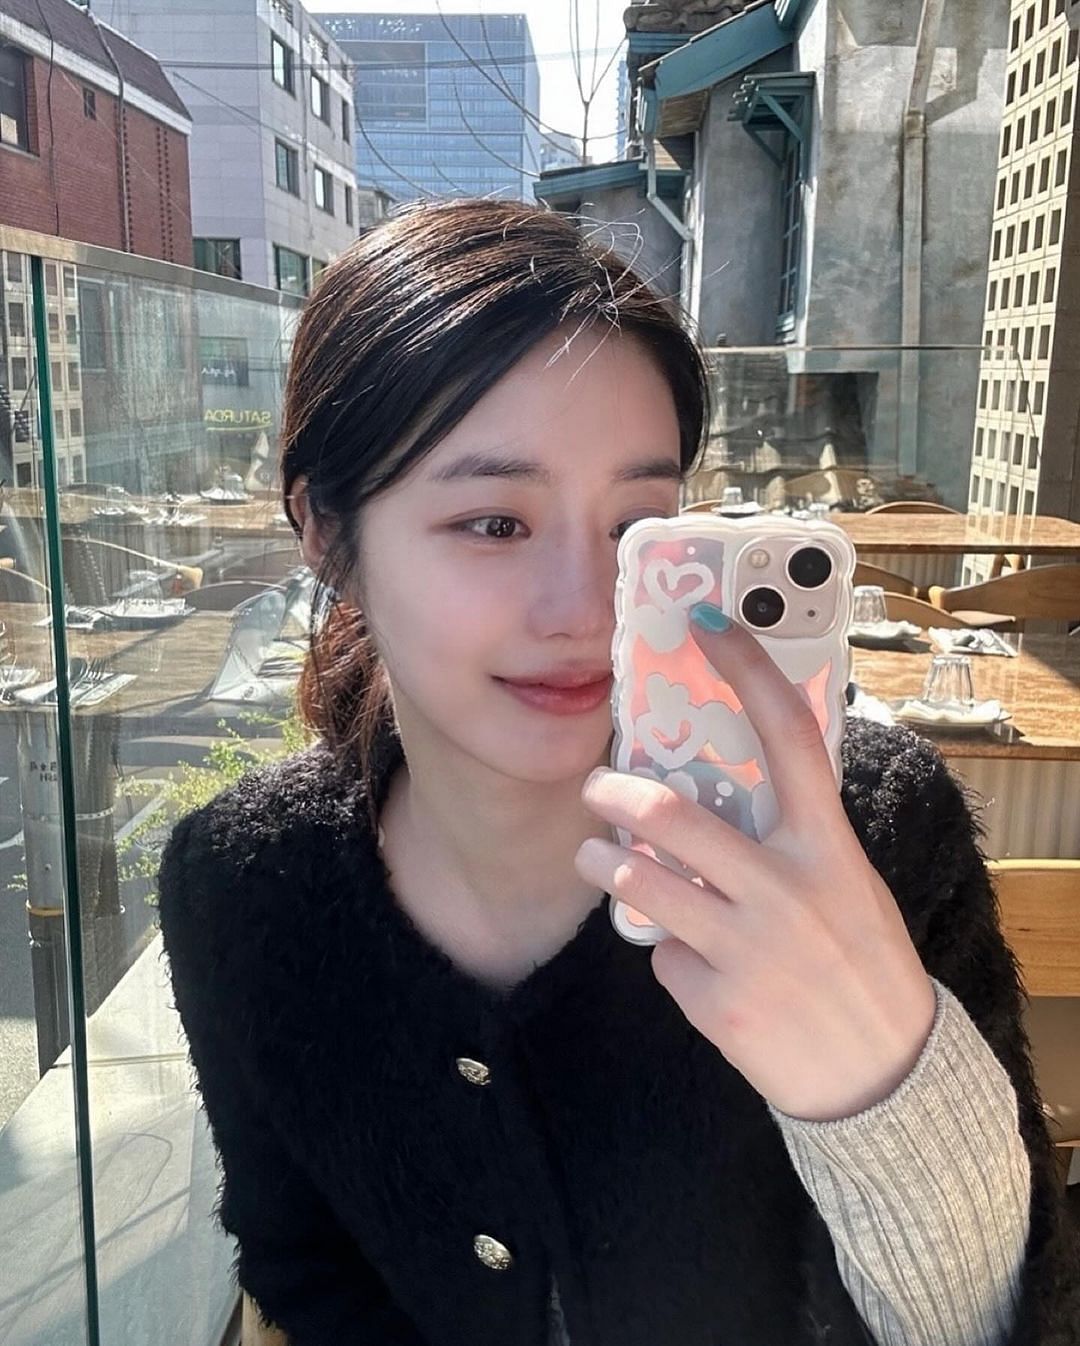 Featuring Choi Moon-hee (Image via choimoonhee/Instagram)